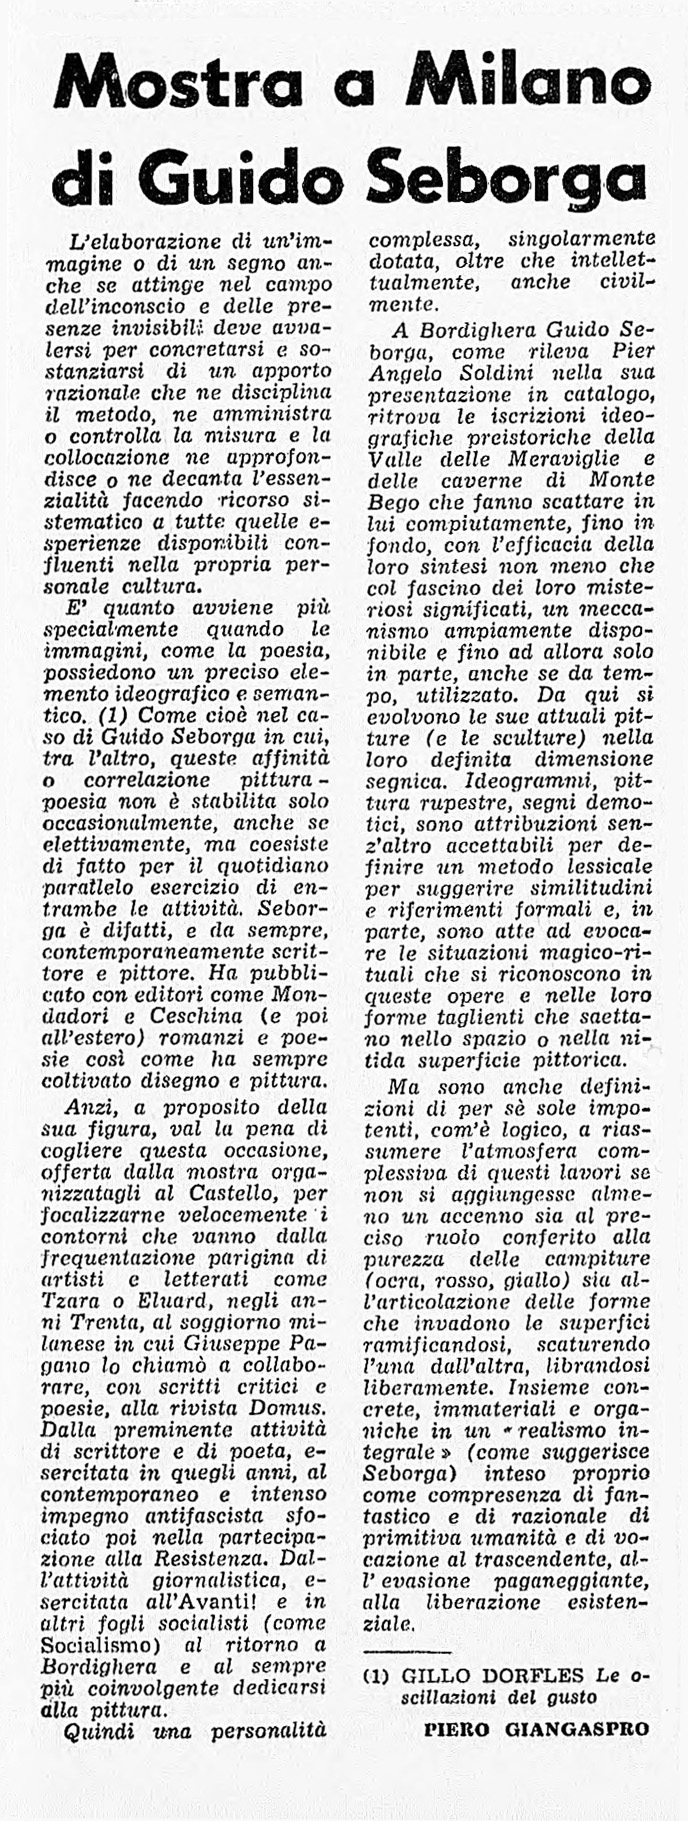 04 l'avanti! 16 mag 1973 p 3